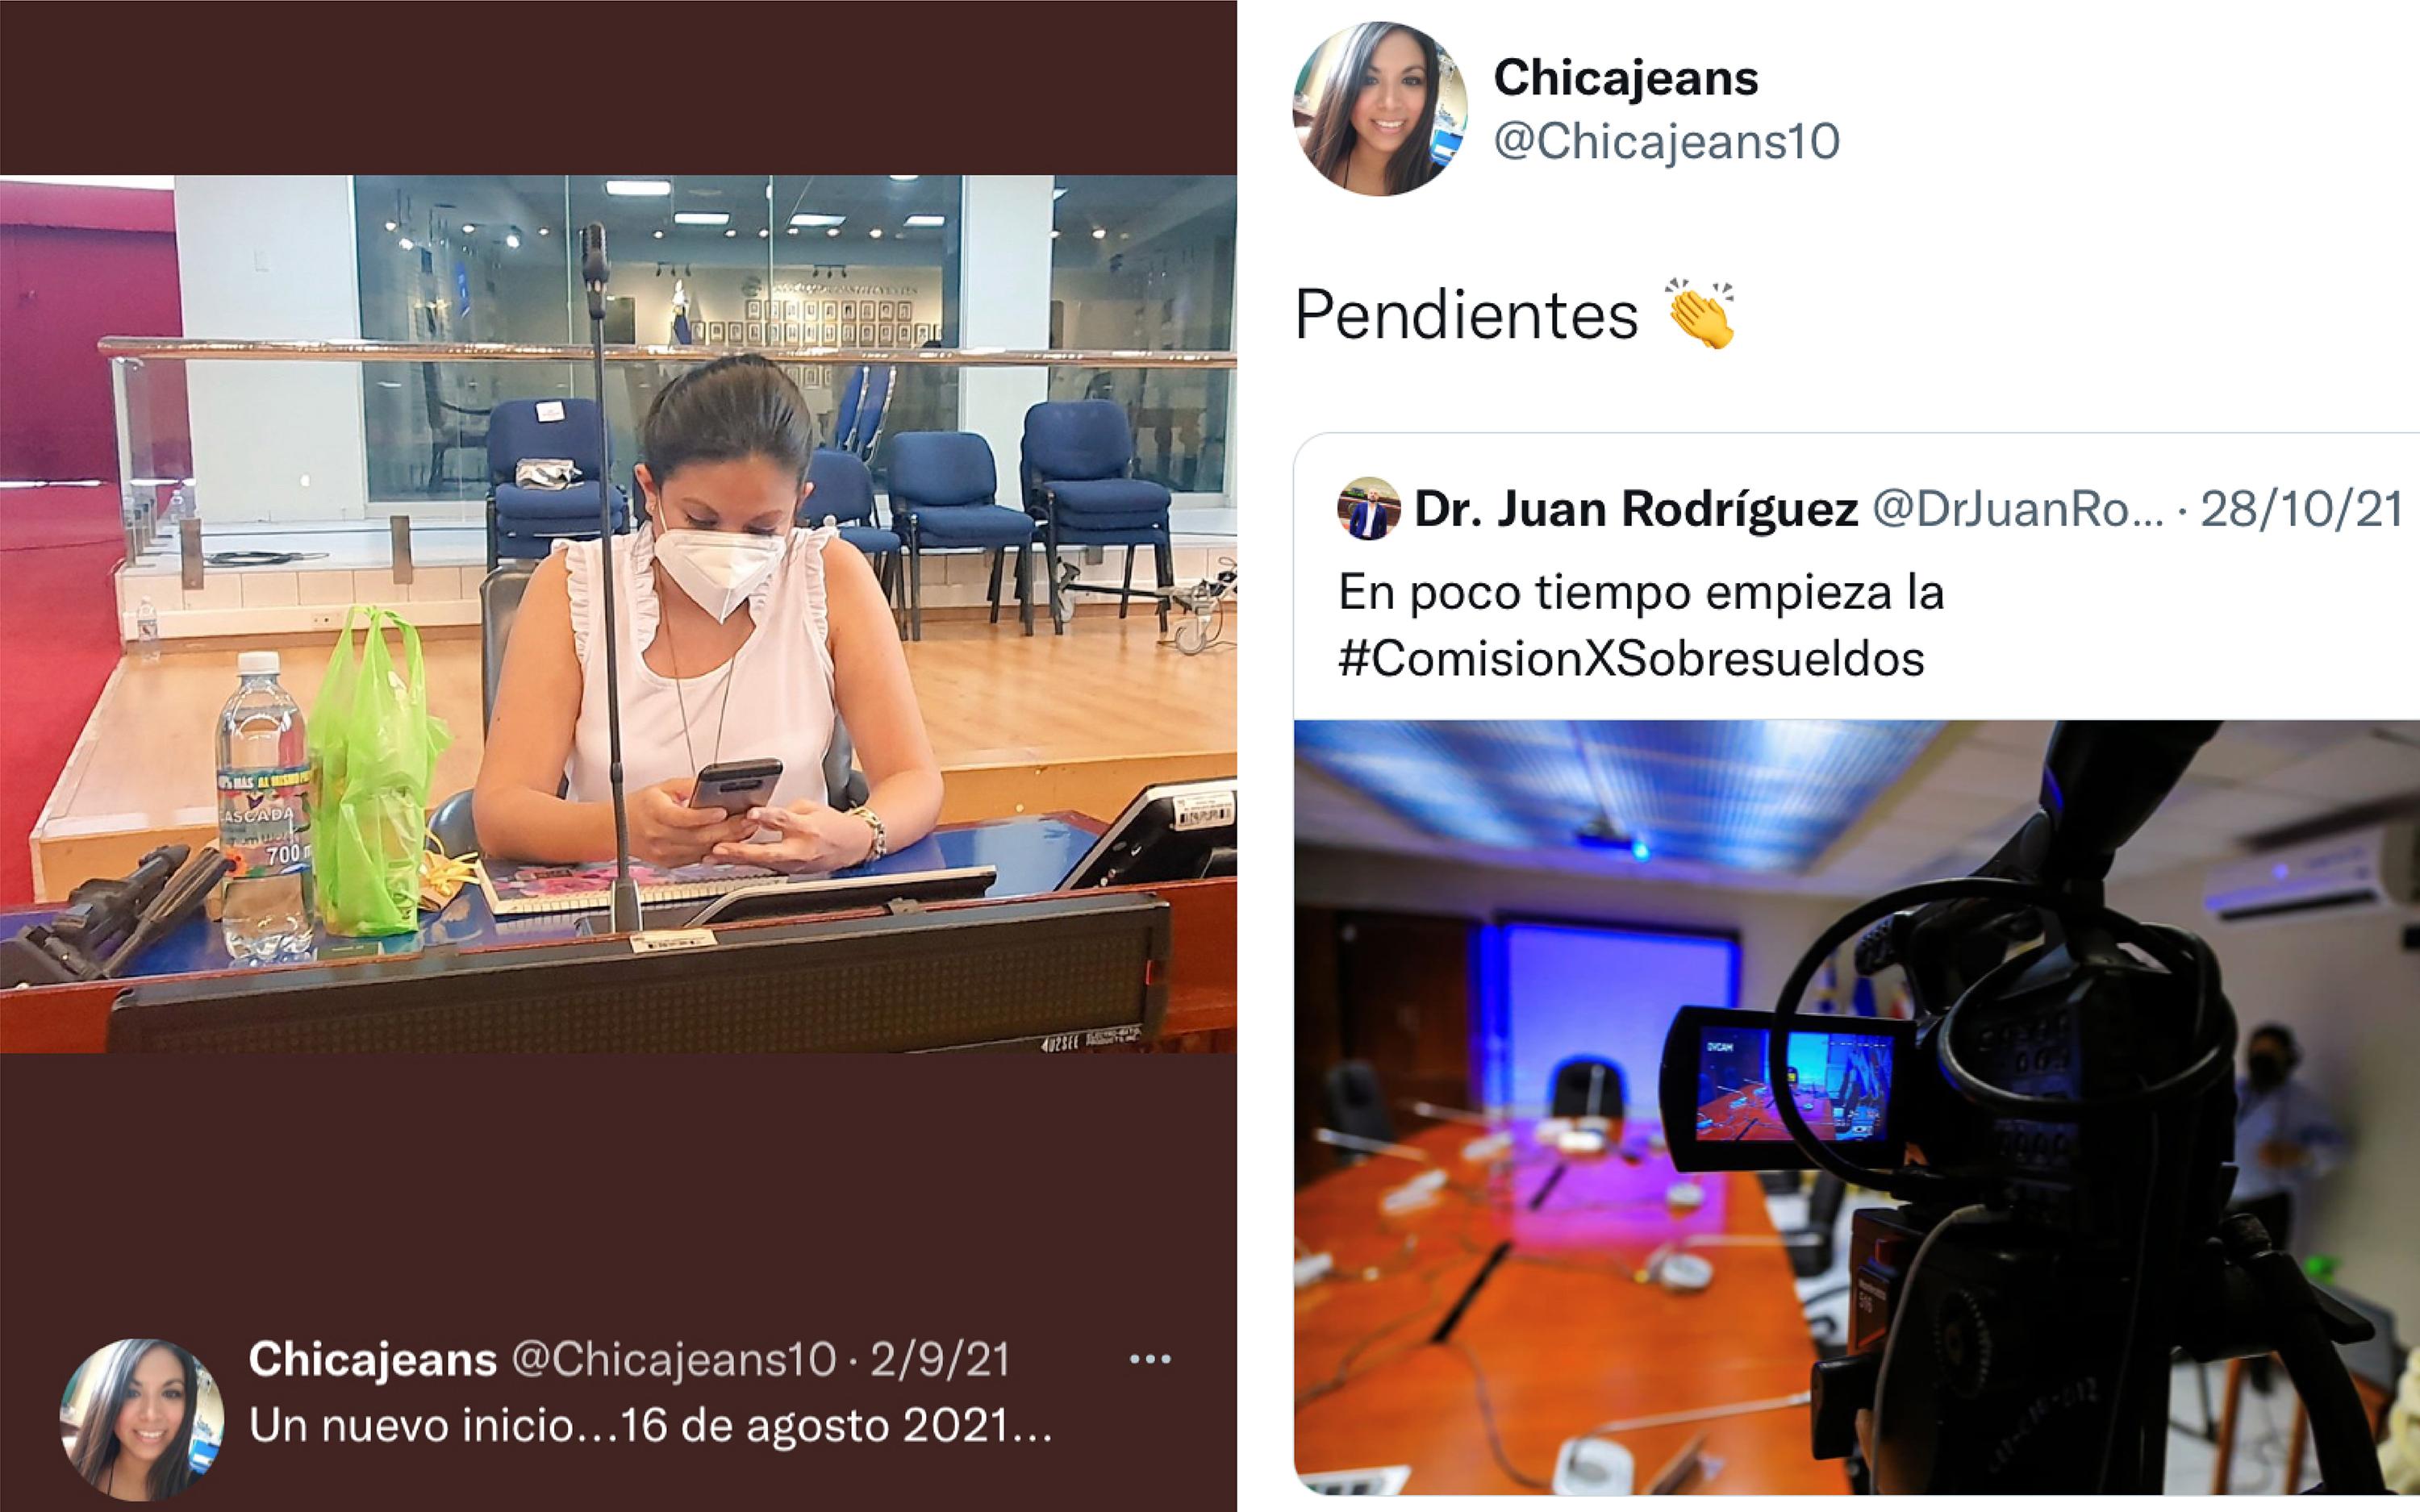 Adriana Méndez trabaja como asistente del diputado Juan Rodríguez, pero cobra su salario de una institución adscrita al Ministerio de Educación, según ha dejado constancia en sus redes sociales.